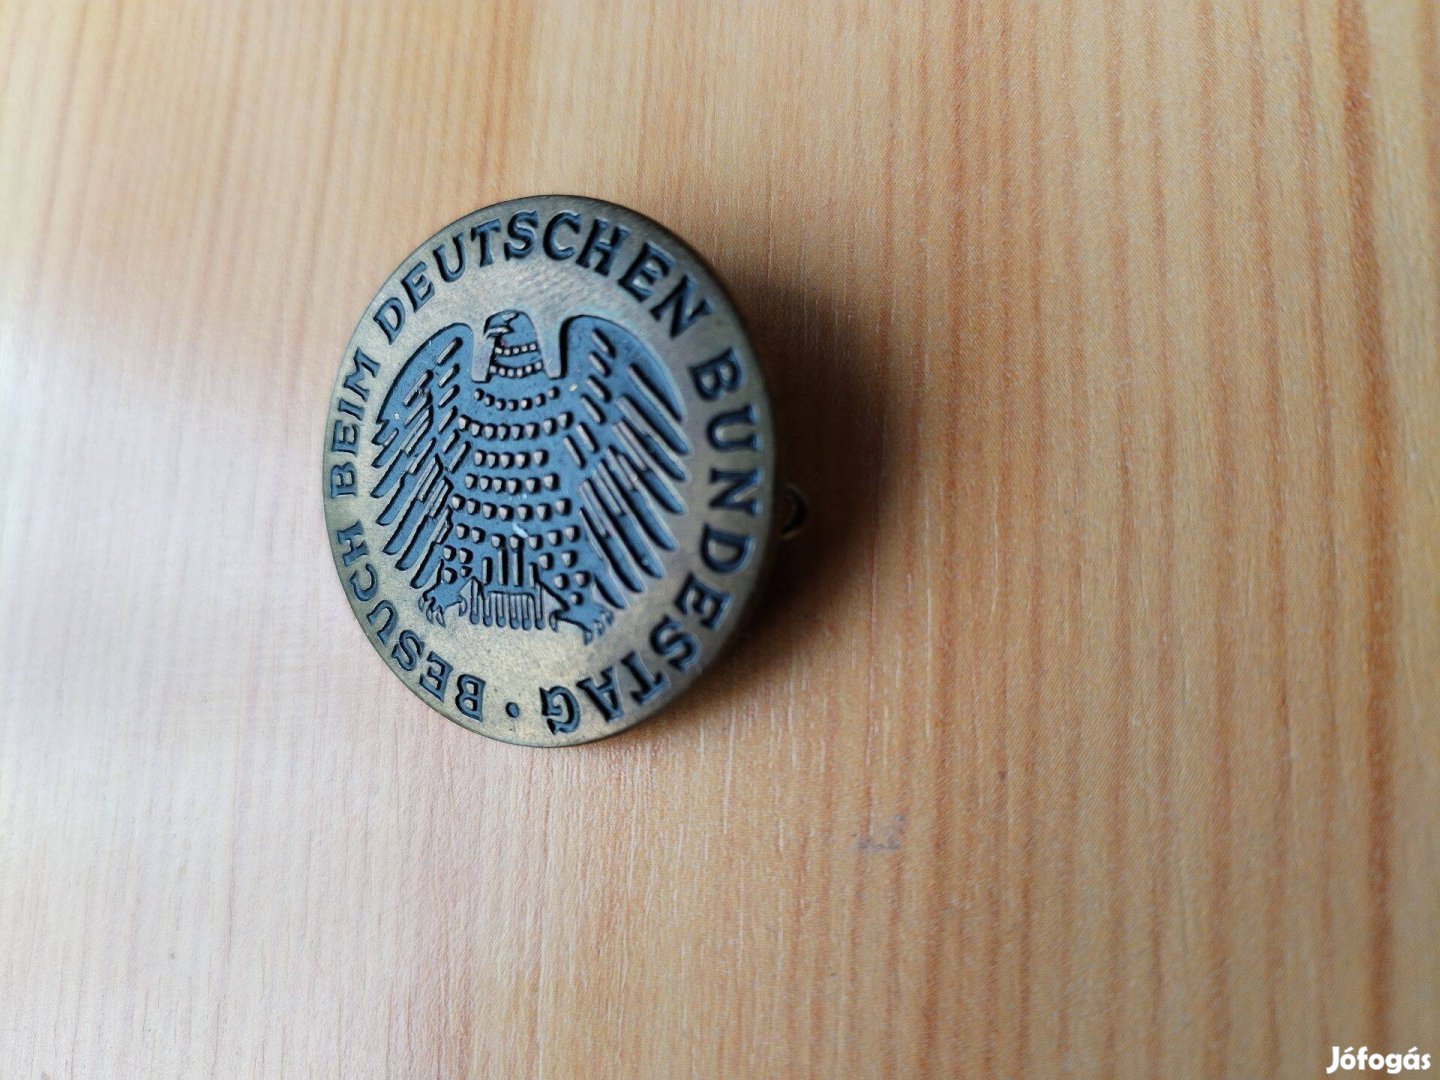 Német Bundesztág tagsági jelvény